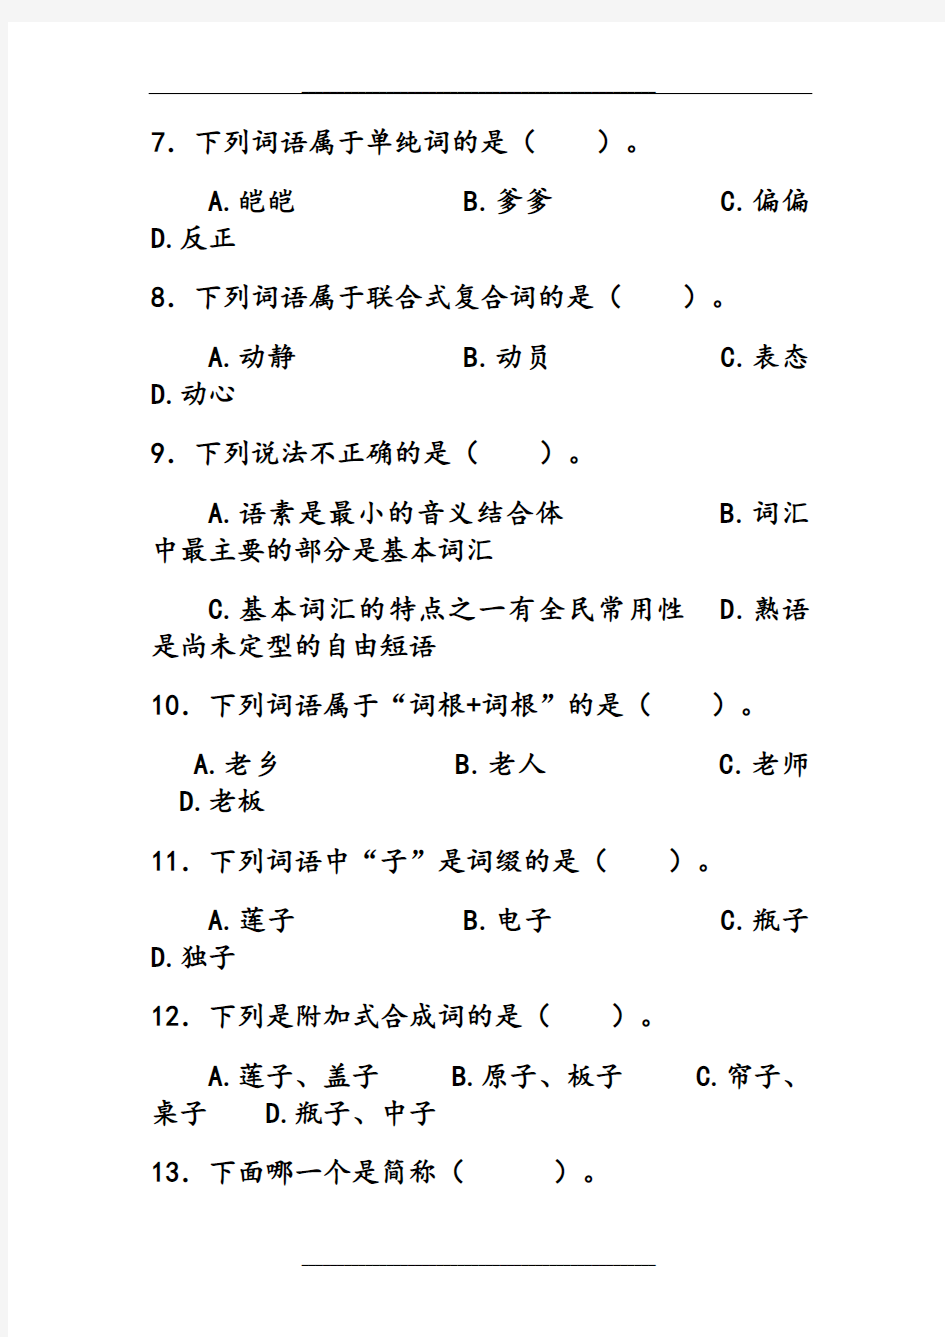 现代汉语第四章词汇(练习)